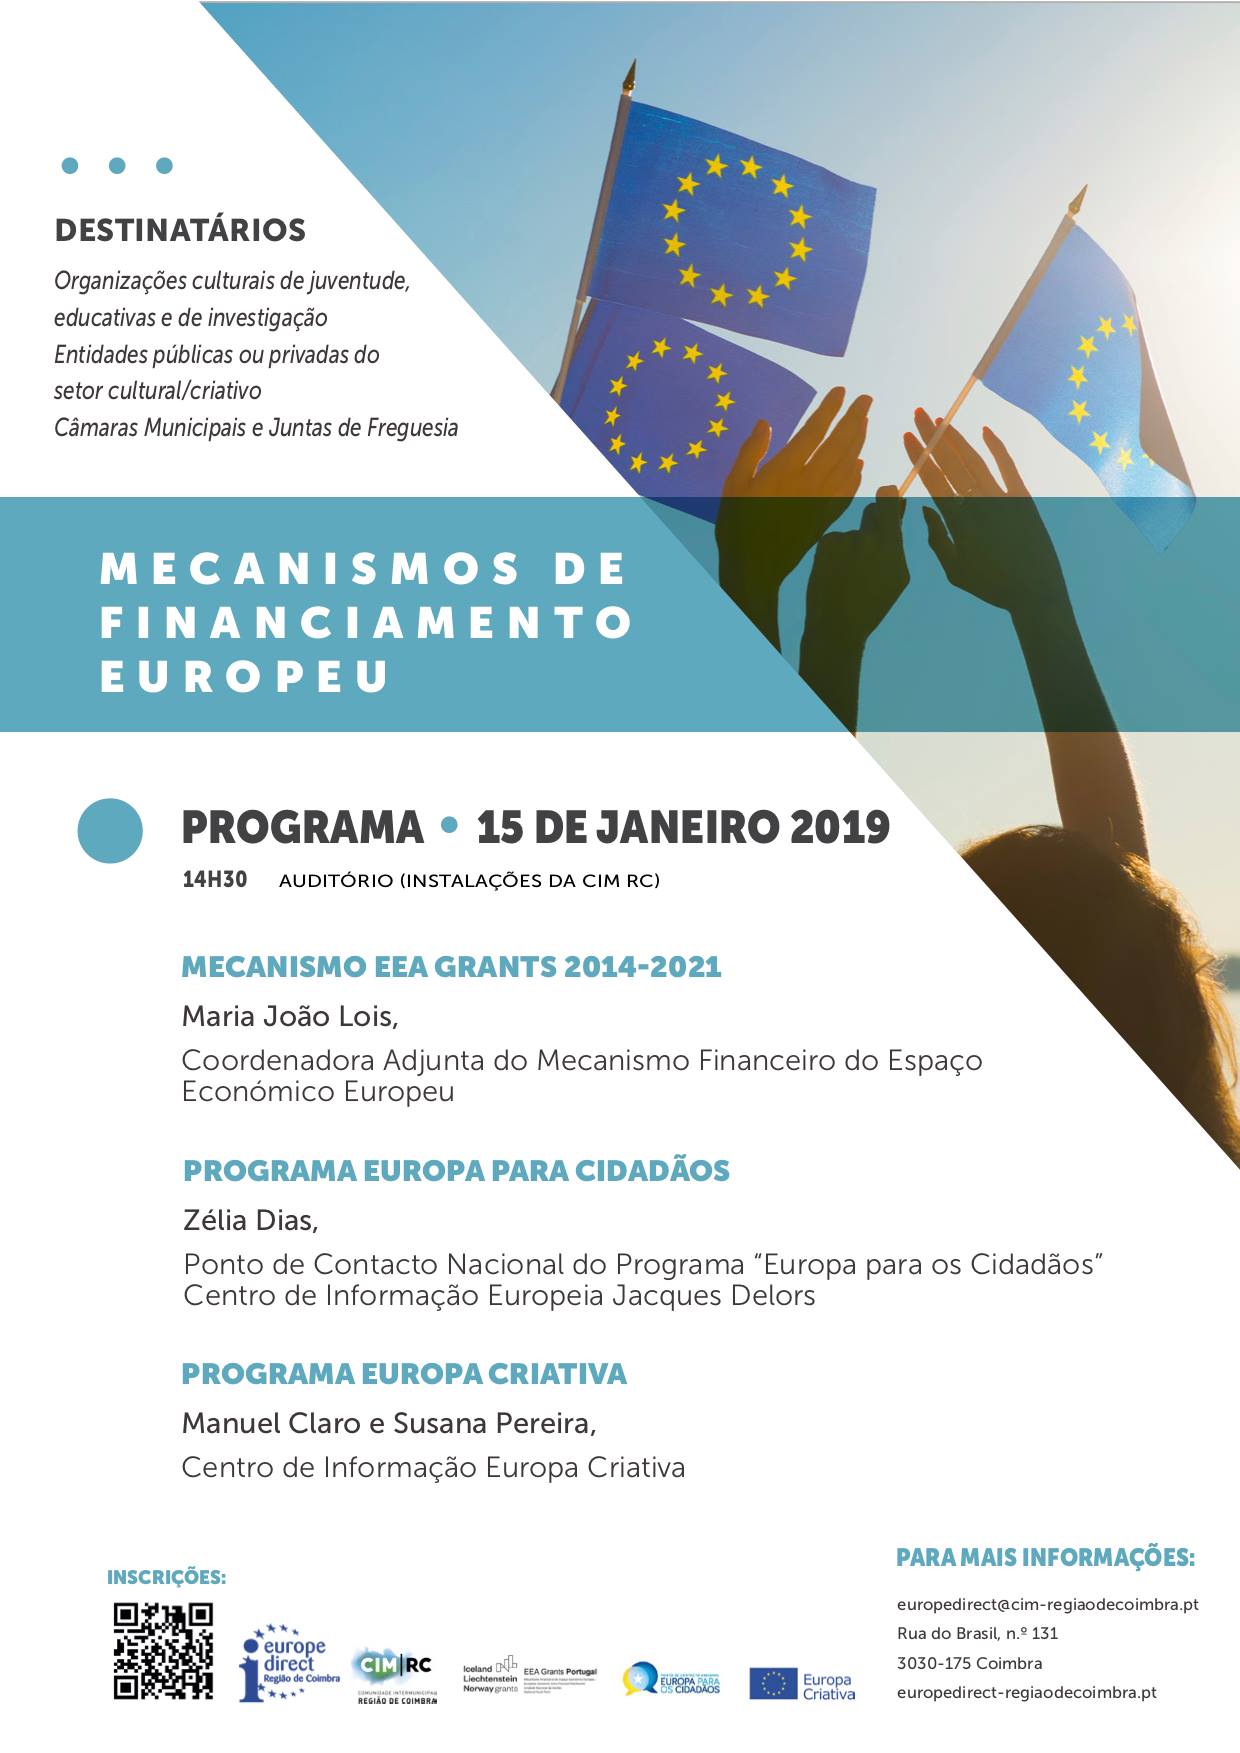 Mecanismos de Financiamento Europeu - Europe Direct Região de Coimbra